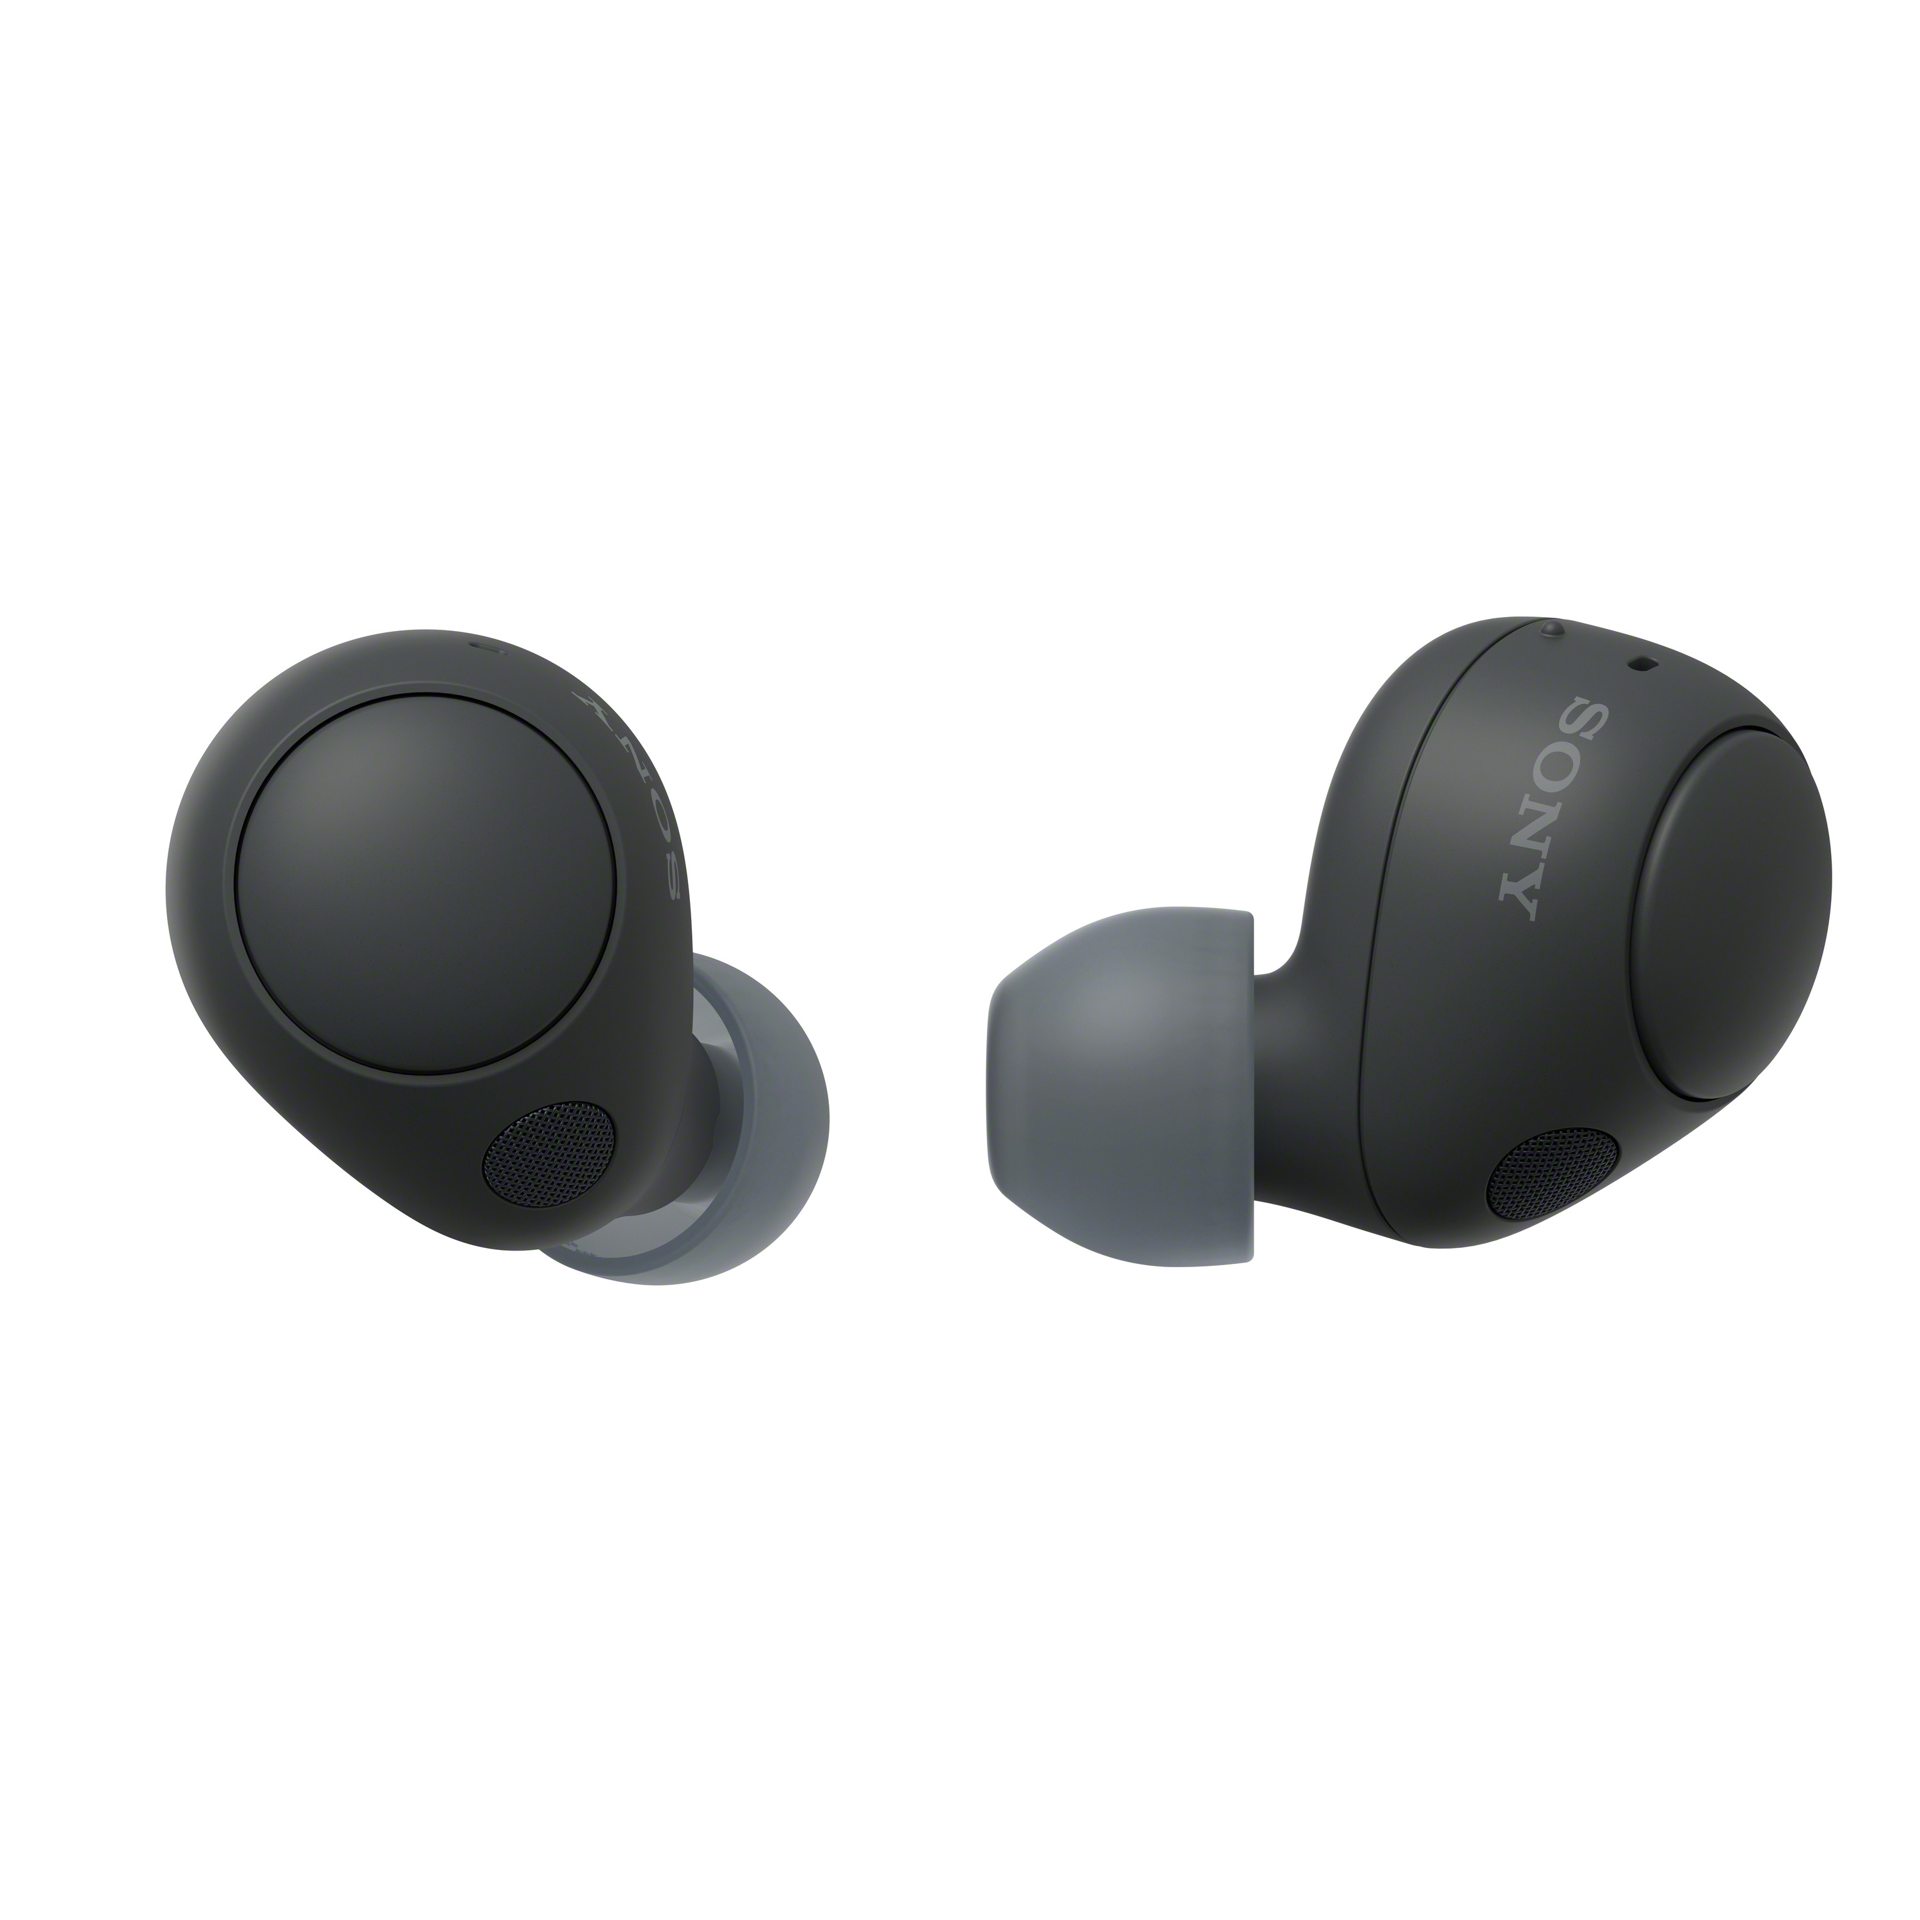 Sony präsentiert die Blue WH-1000XM5 True-Wireless-Earbuds den sowie Kopfhörer WF-C700N in Midnight